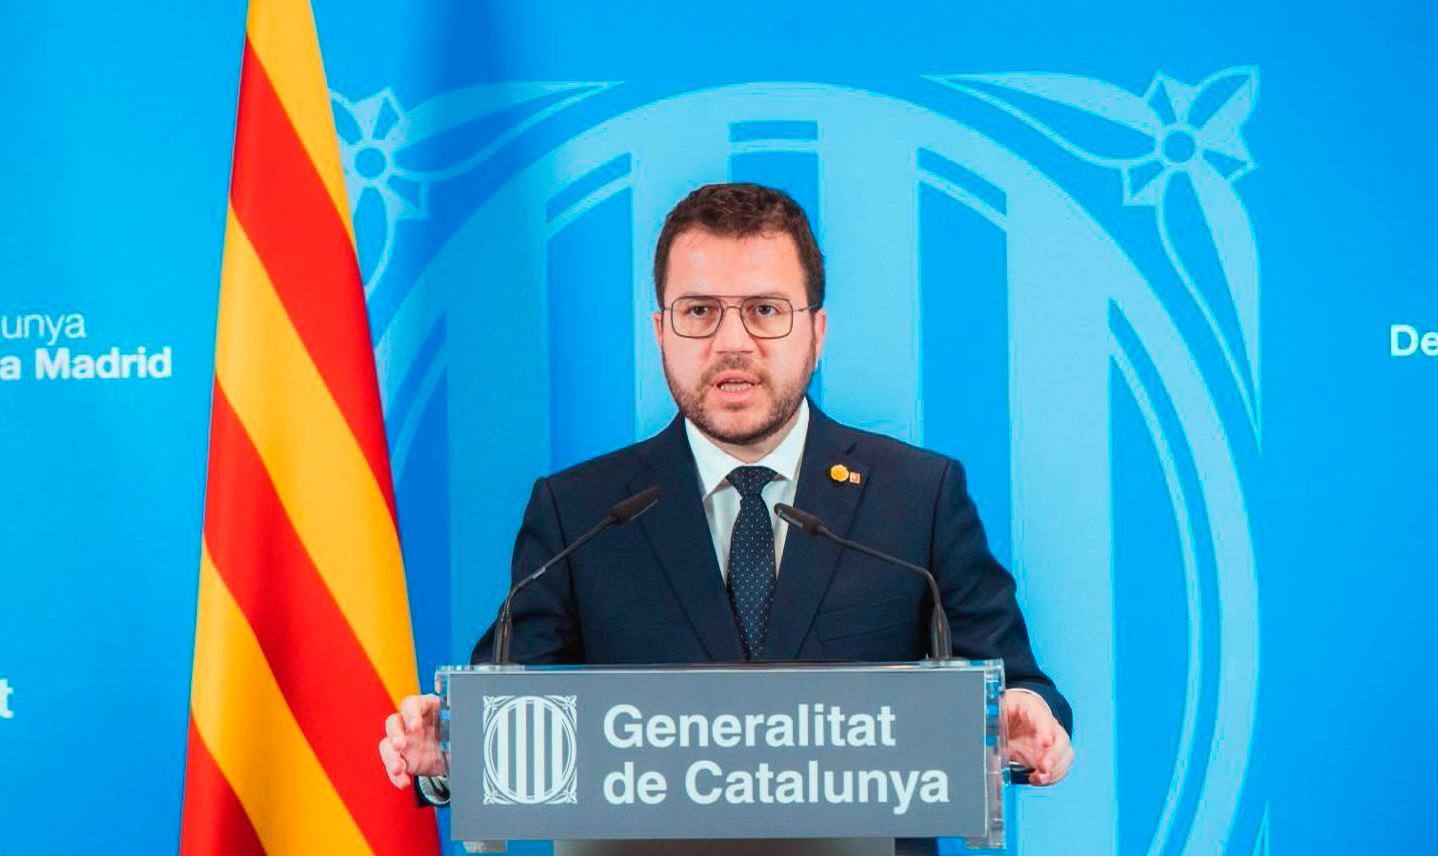 Escândalo envolvendo Presidenta do Parlamento catalão culminou no abandono em massa de diversos dirigentes do governo